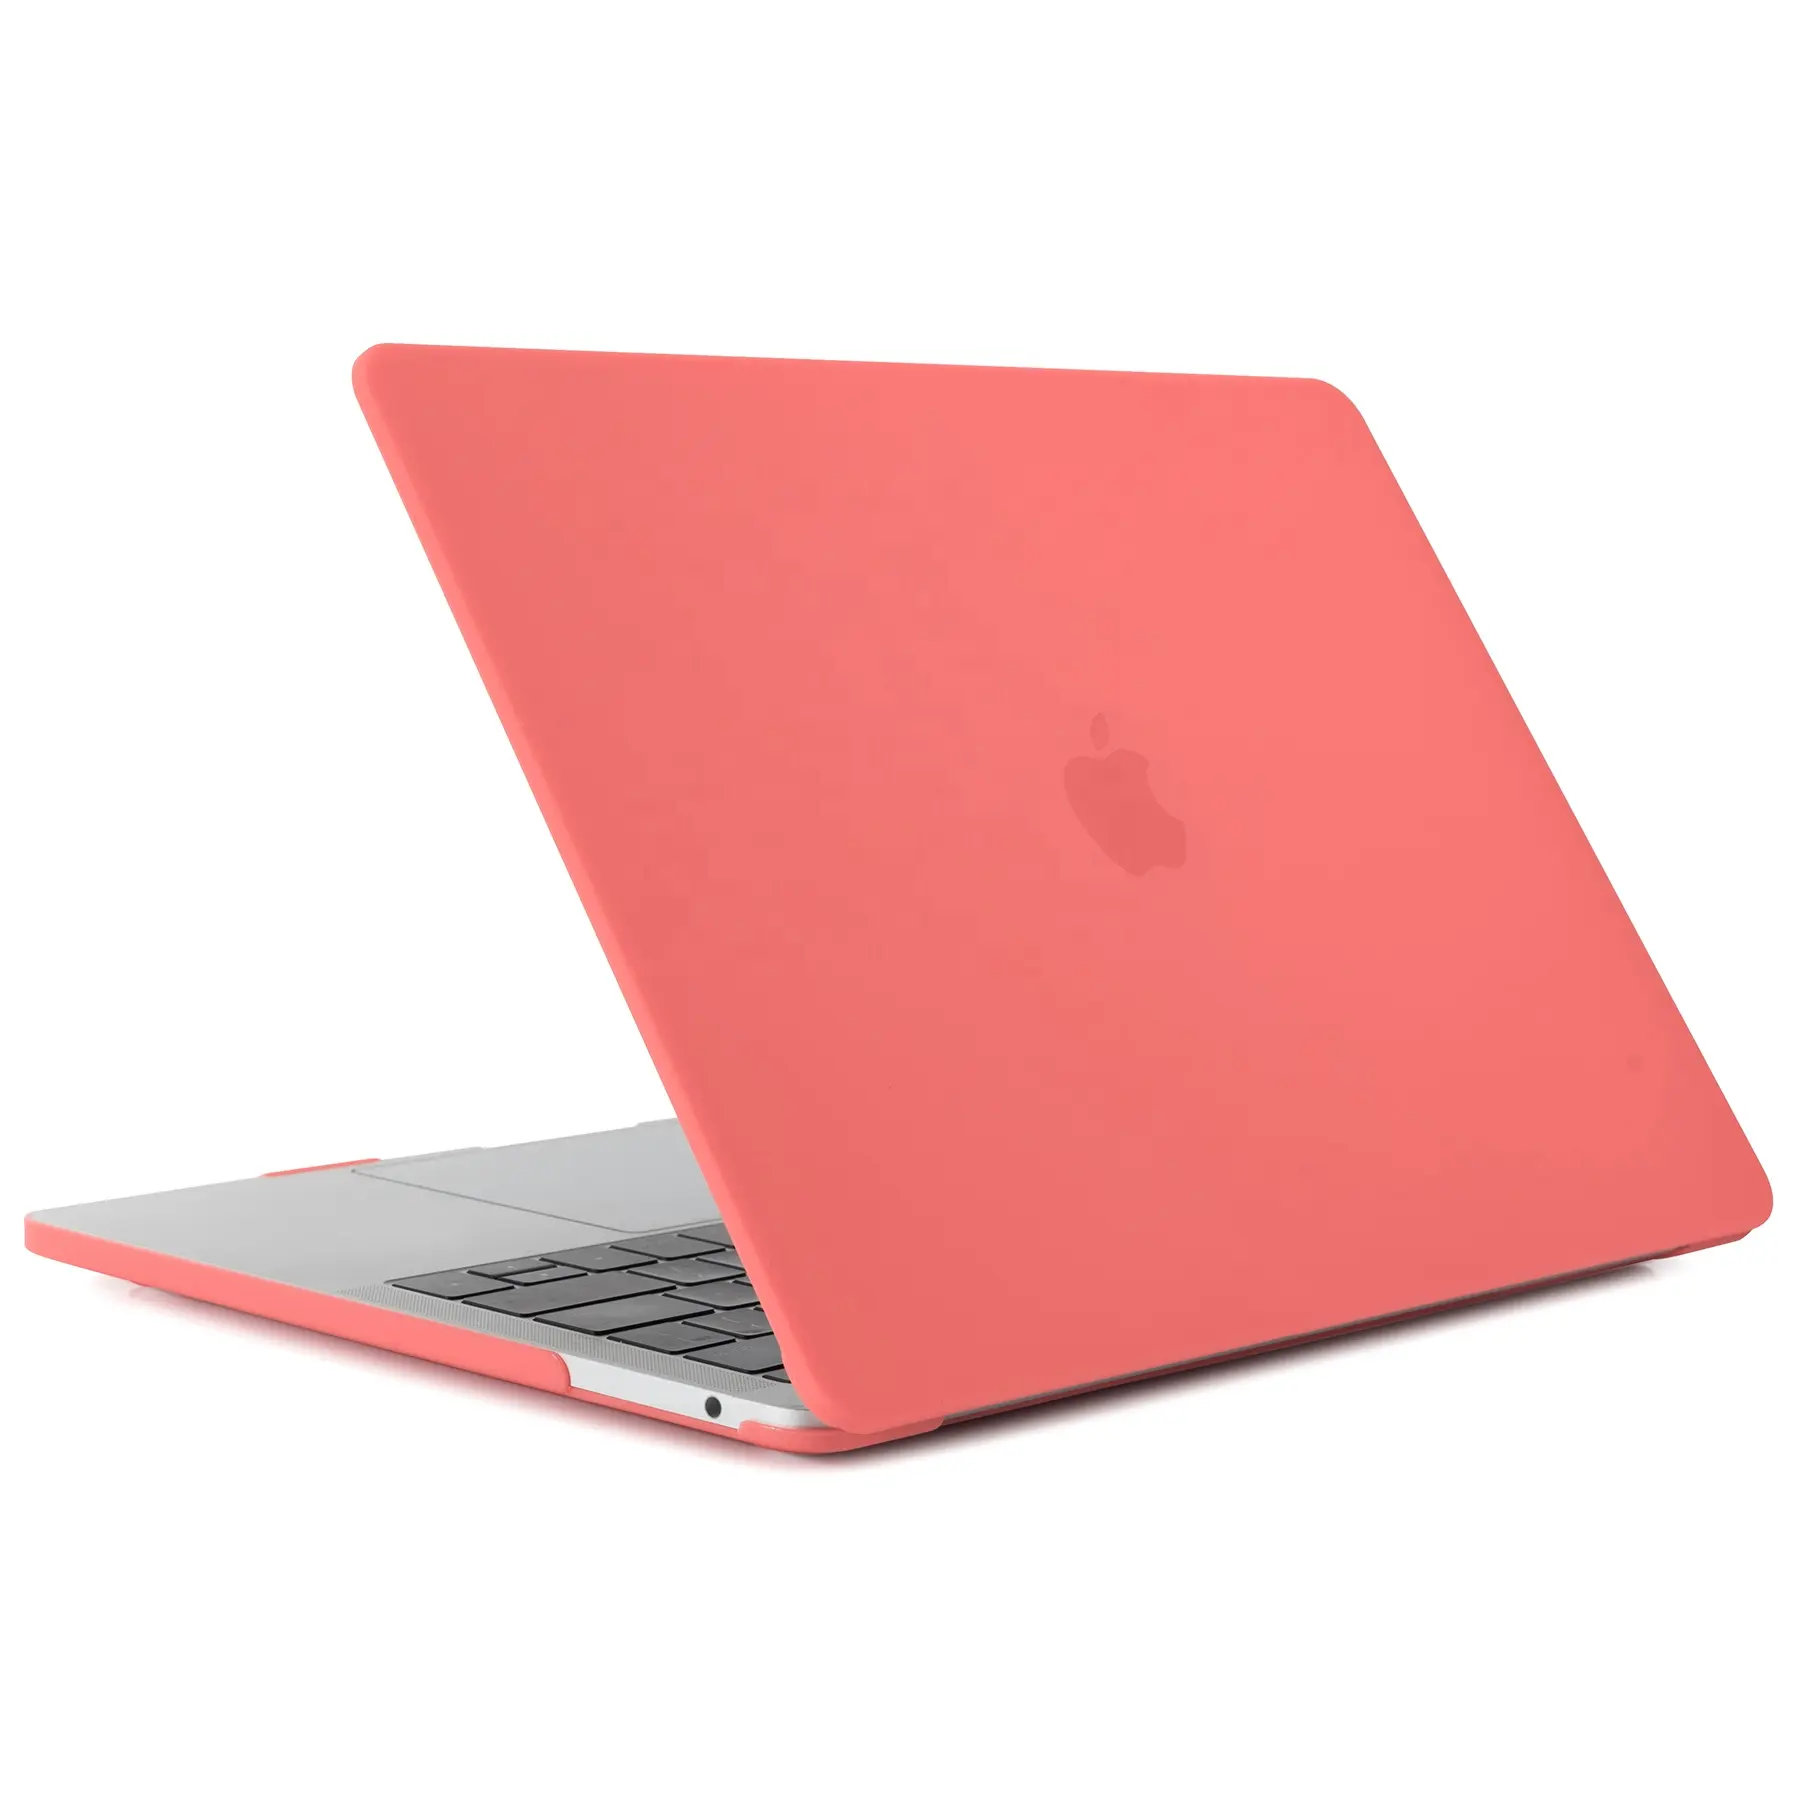 Çoklu renkler İnce hafif mat PC sert MacBook çantası Pro 13 14 15 16 inç